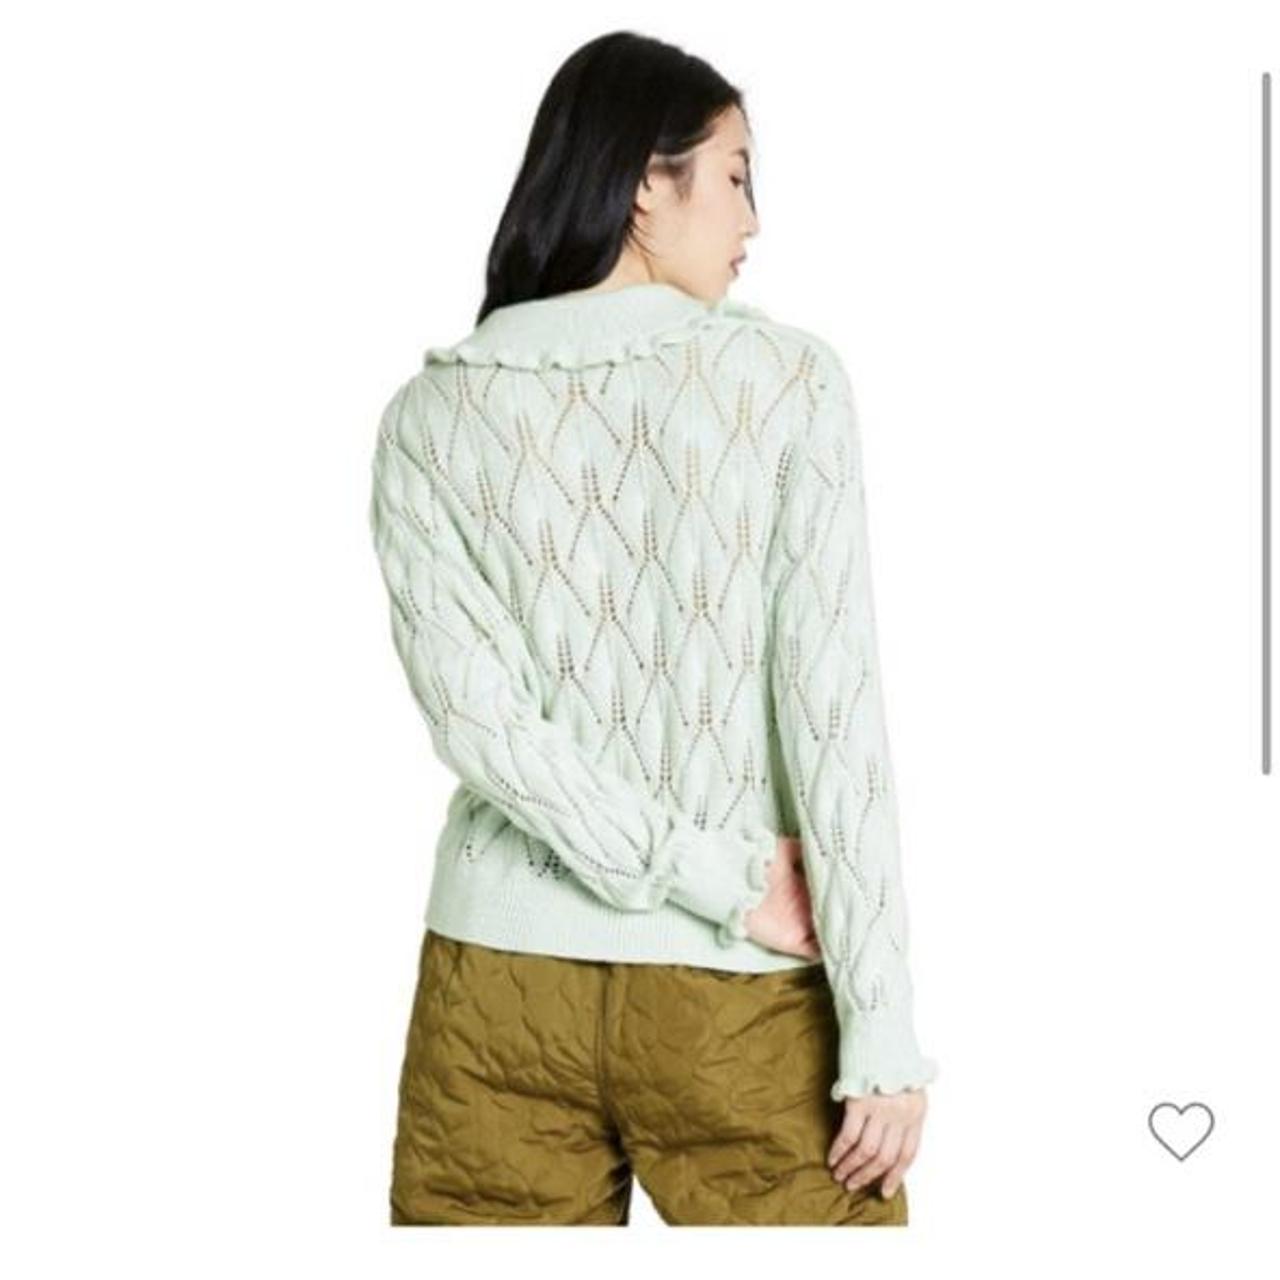 Women's Sweater Tank Top - Sandy Liang x Target Blue XL